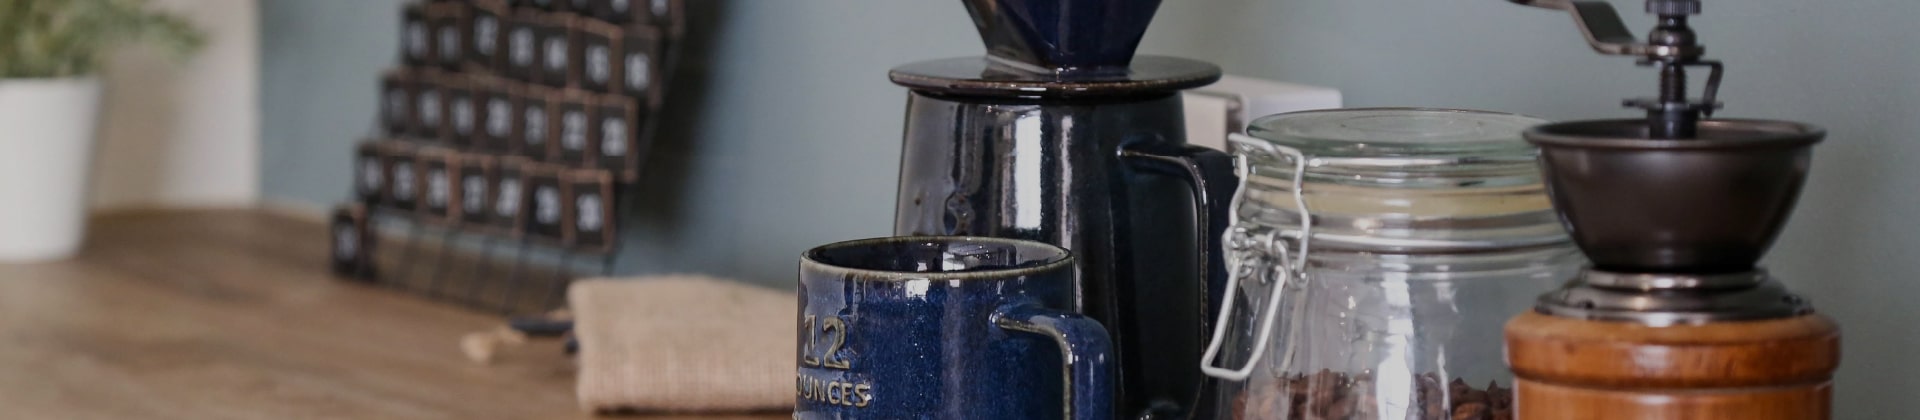 マグカップとコーヒーミルの写真